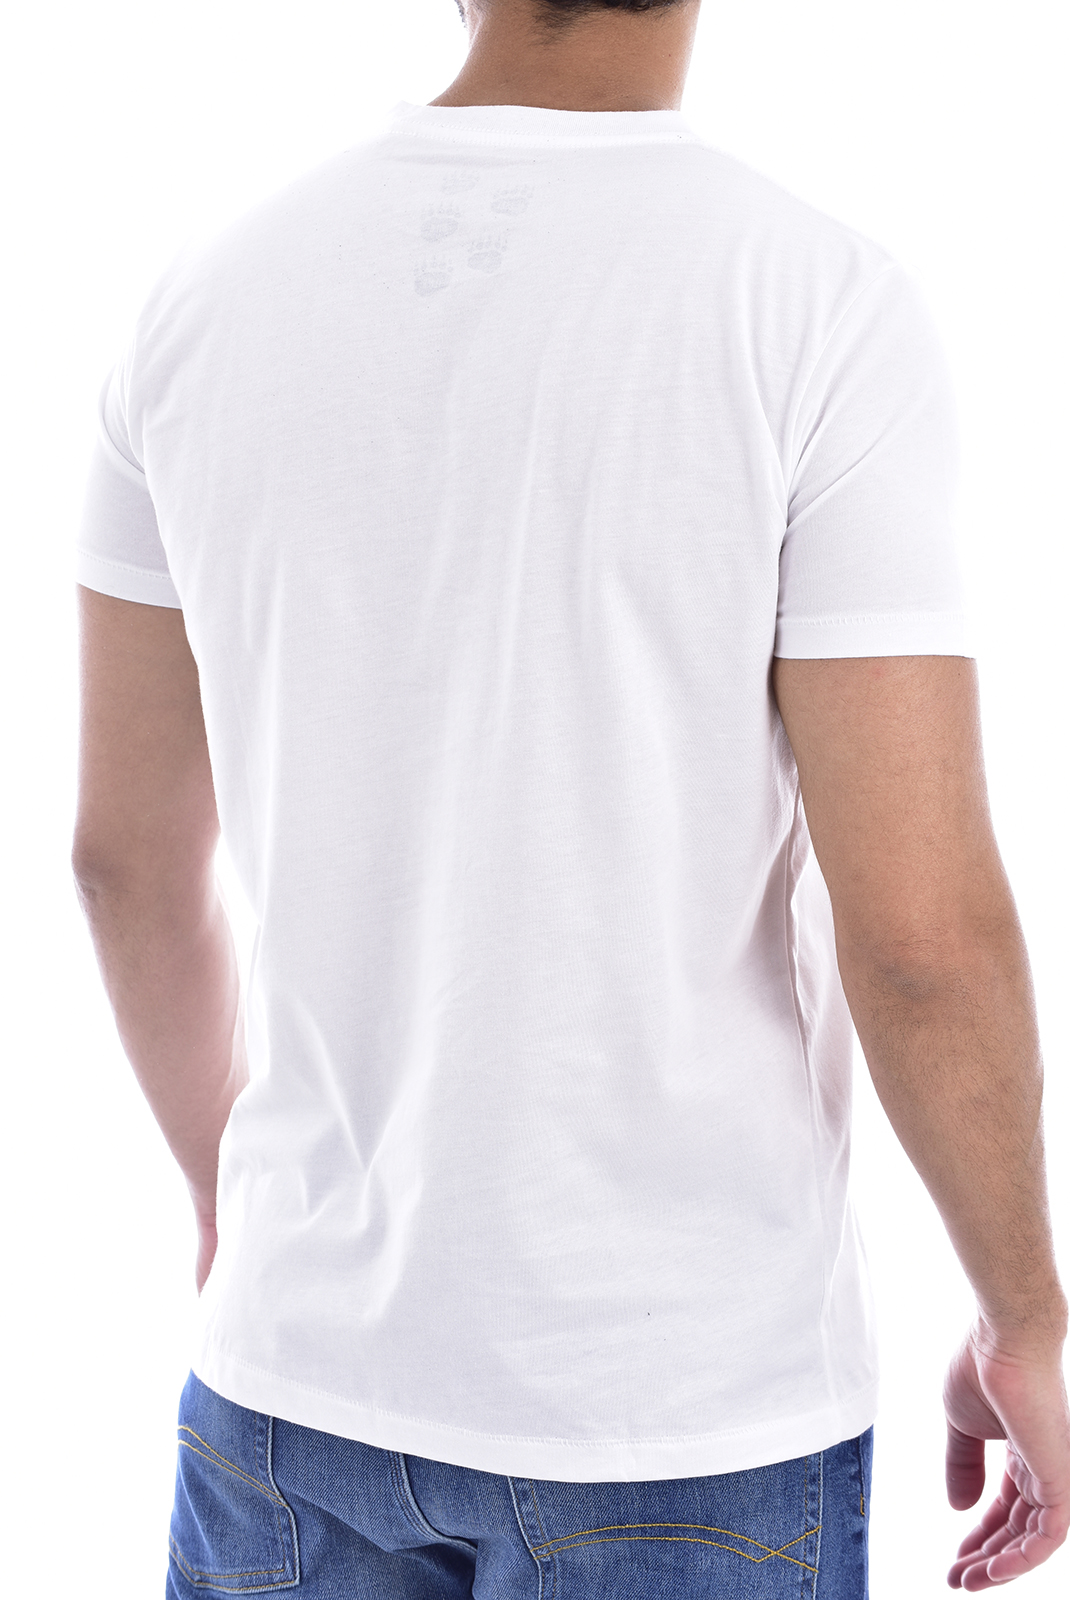 Tee-shirt blanc à col rond Diesel homme - Oocy1l Wild